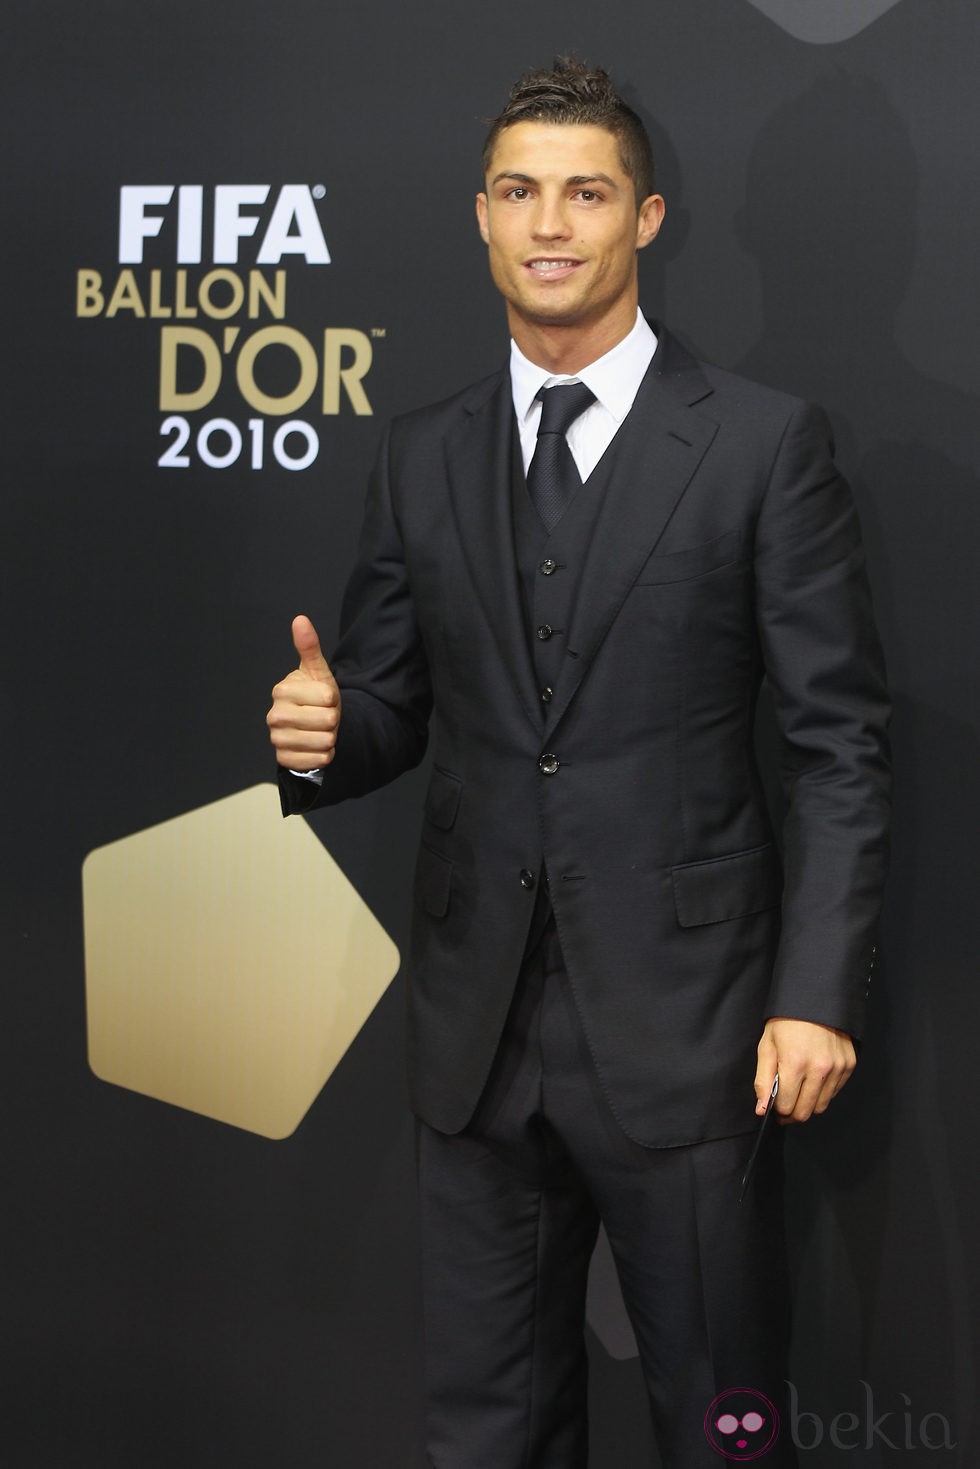 Cristiano muy elegante traje en una entrega de premios - Cristiano Ronaldo, el jugador de más sexy papá 10 - Foto en Bekia Actualidad